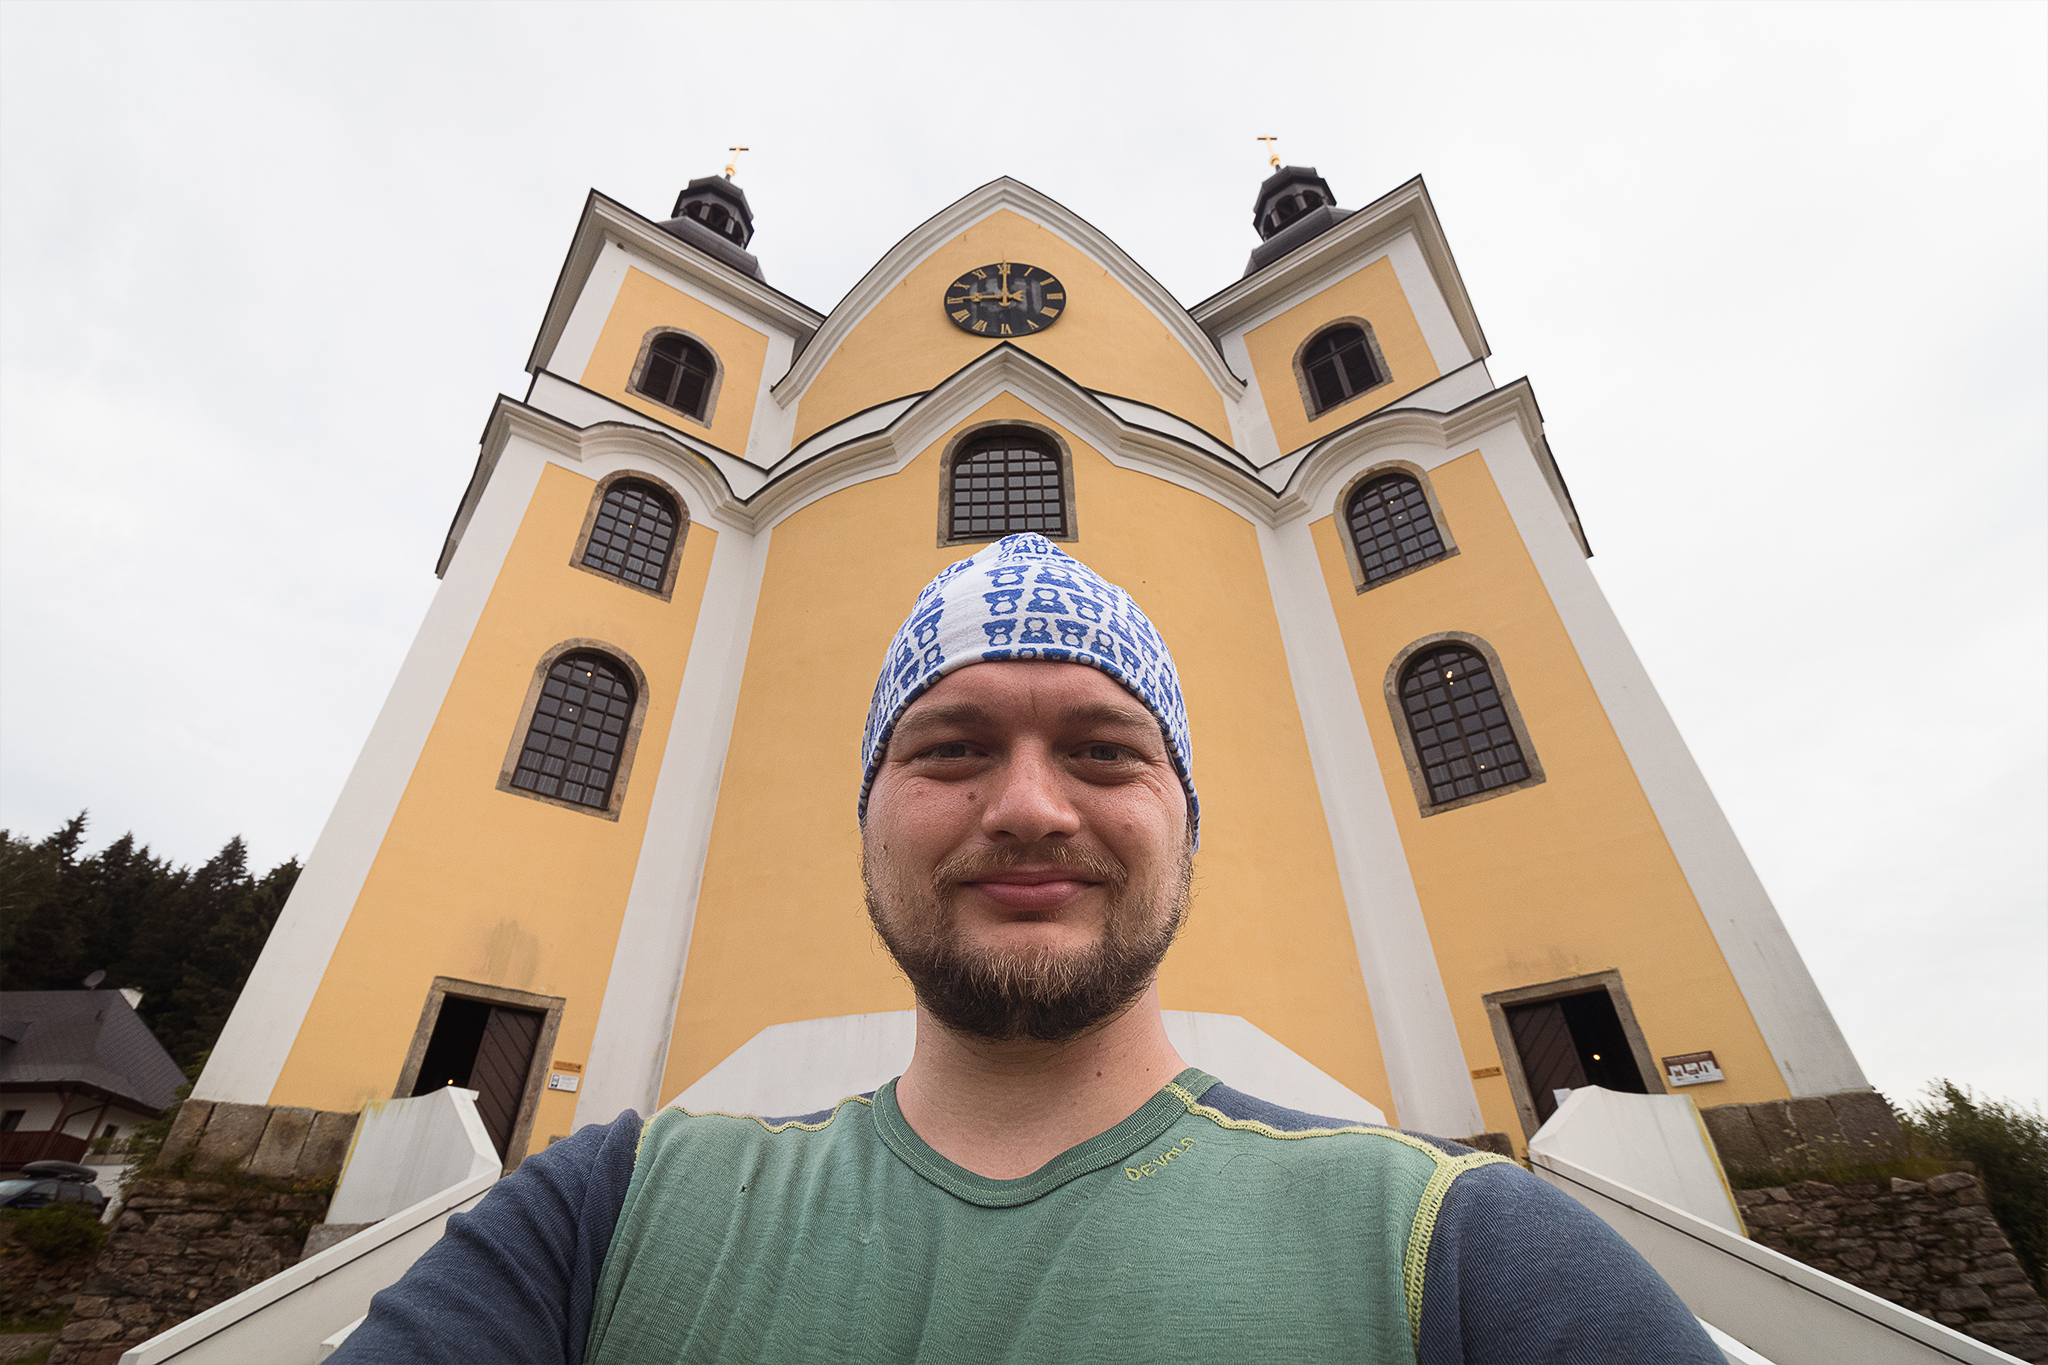 Odbočil jsem z červené trasy, abych navštívil Neratov. Je to skvělé místo, které mám moc rád a myslím, že bez návštěvy by tenhle výlet byl o něco ochuzen. Dobré a nádherný kostel s prosklenou střechou included!